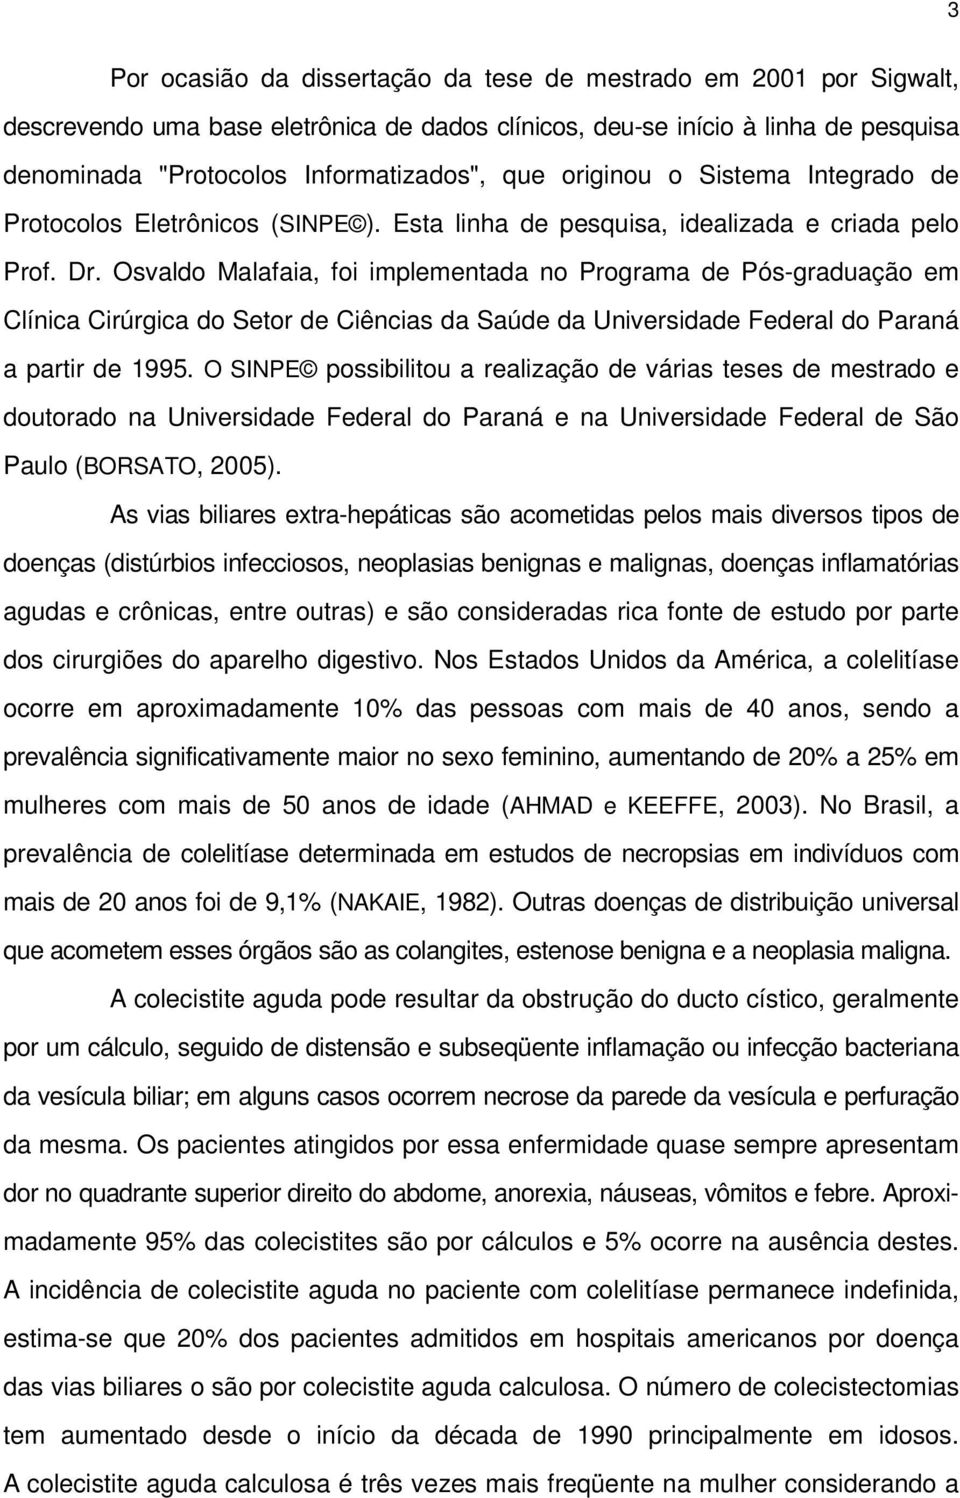 Osvaldo Malafaia, foi implementada no Programa de Pós-graduação em Clínica Cirúrgica do Setor de Ciências da Saúde da Universidade Federal do Paraná a partir de 1995.